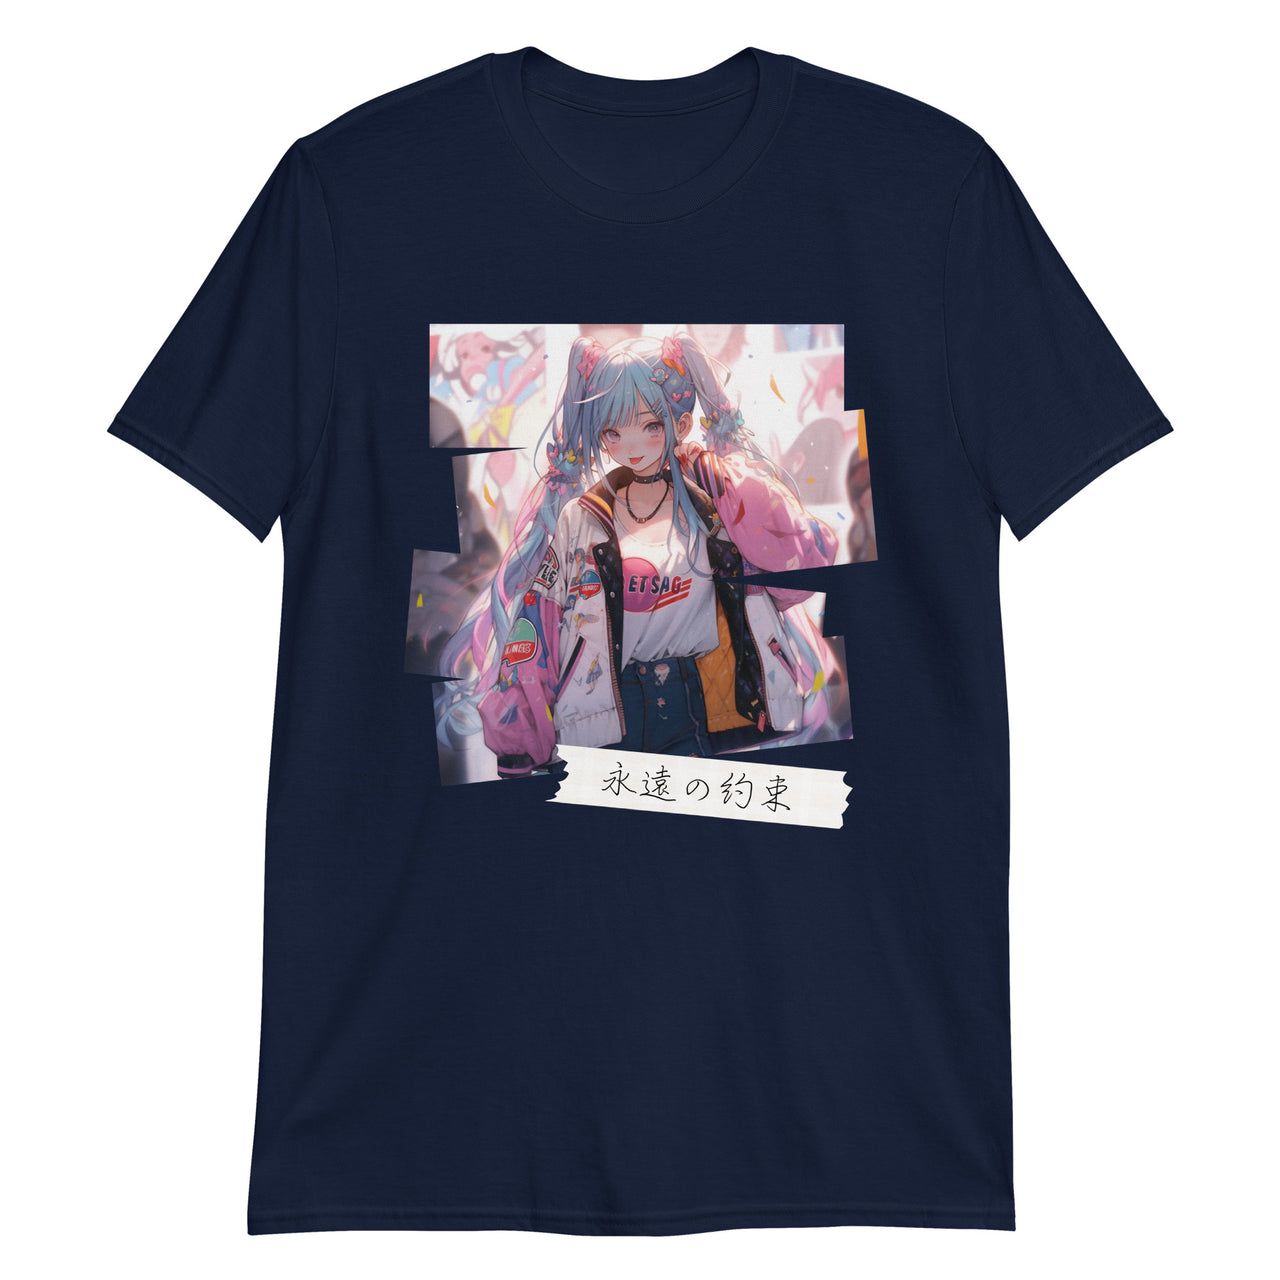 Anime Girl Forever Promise Japanese T-Shirt